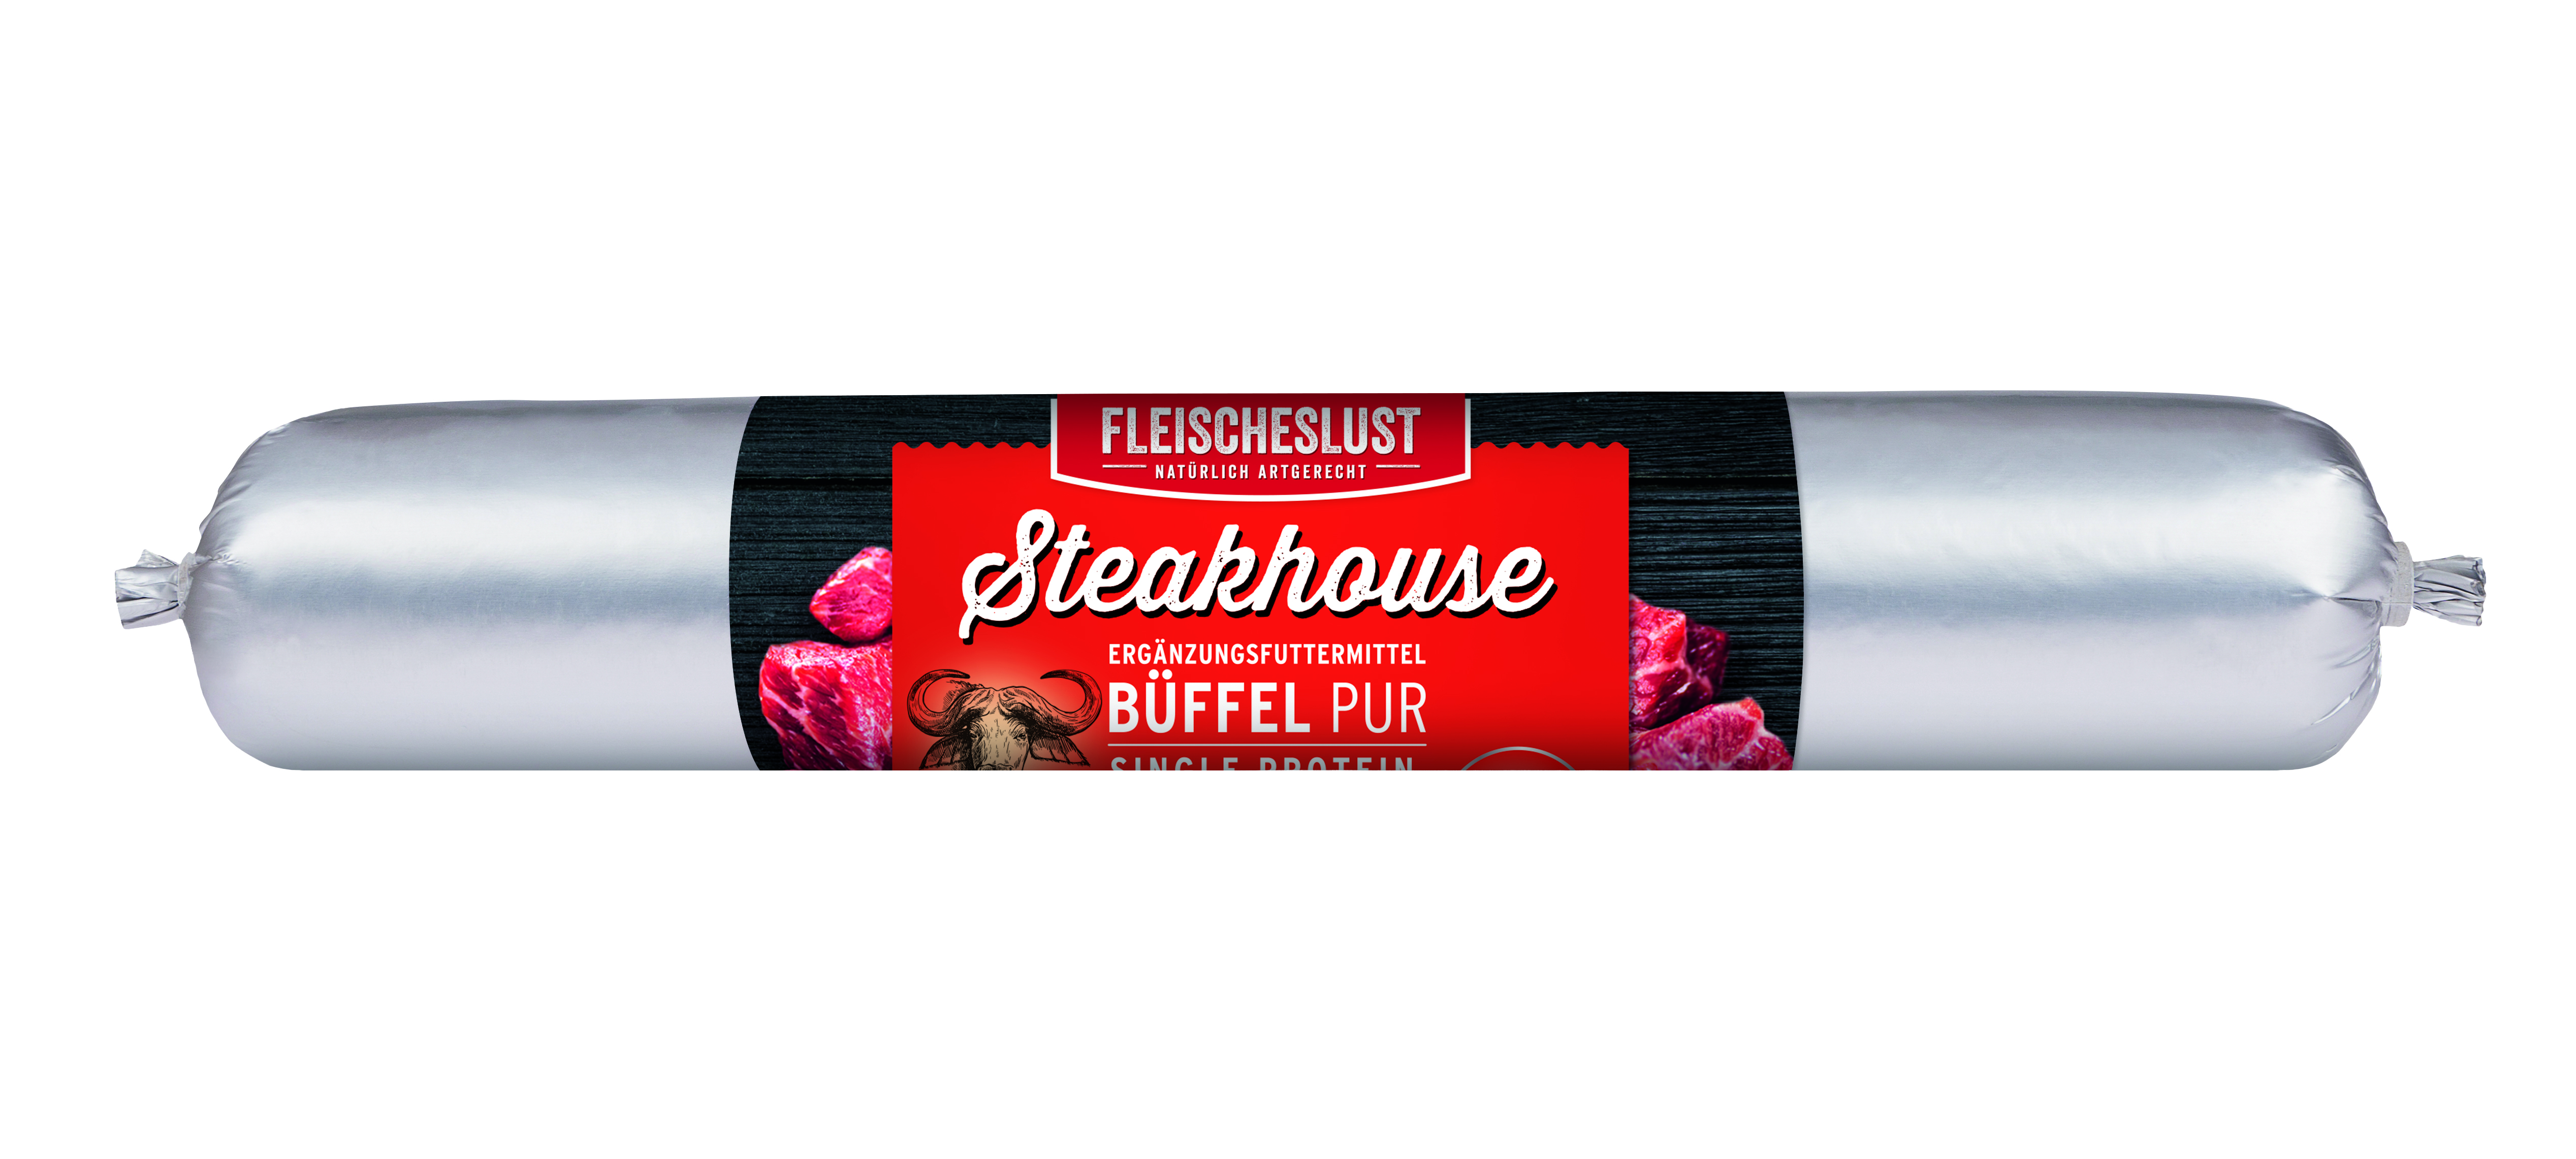 Steakhouse Reinfleischwurst 600g